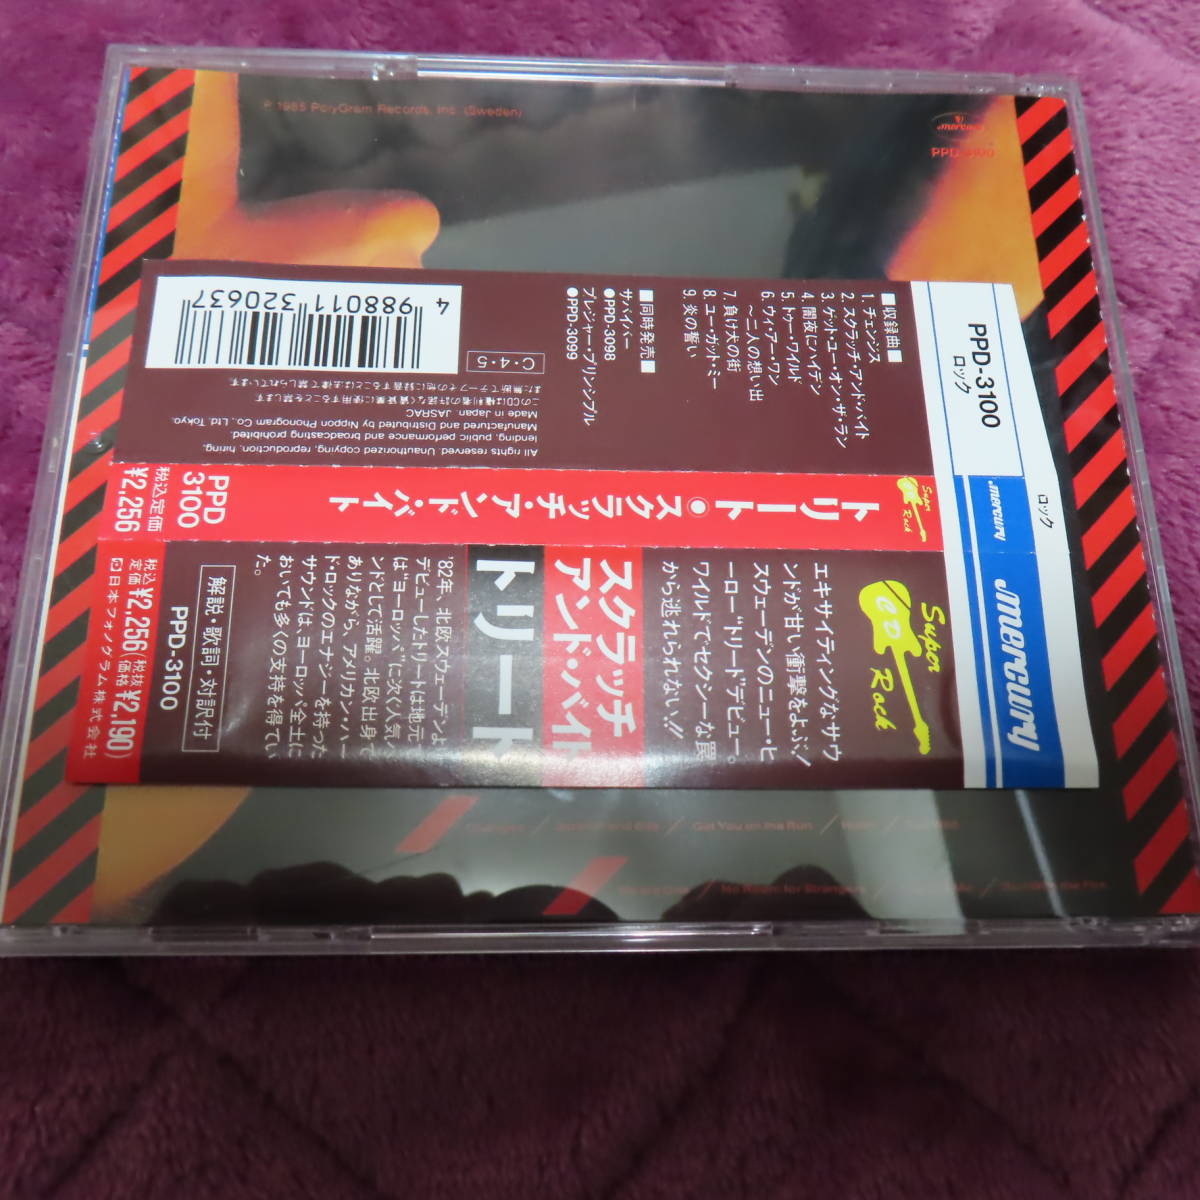 トリート/スクラッチ・アンド・バイト(1990年発売国内盤Orig帯付き旧規格CD)オリジナル帯稀少!!!!_画像2